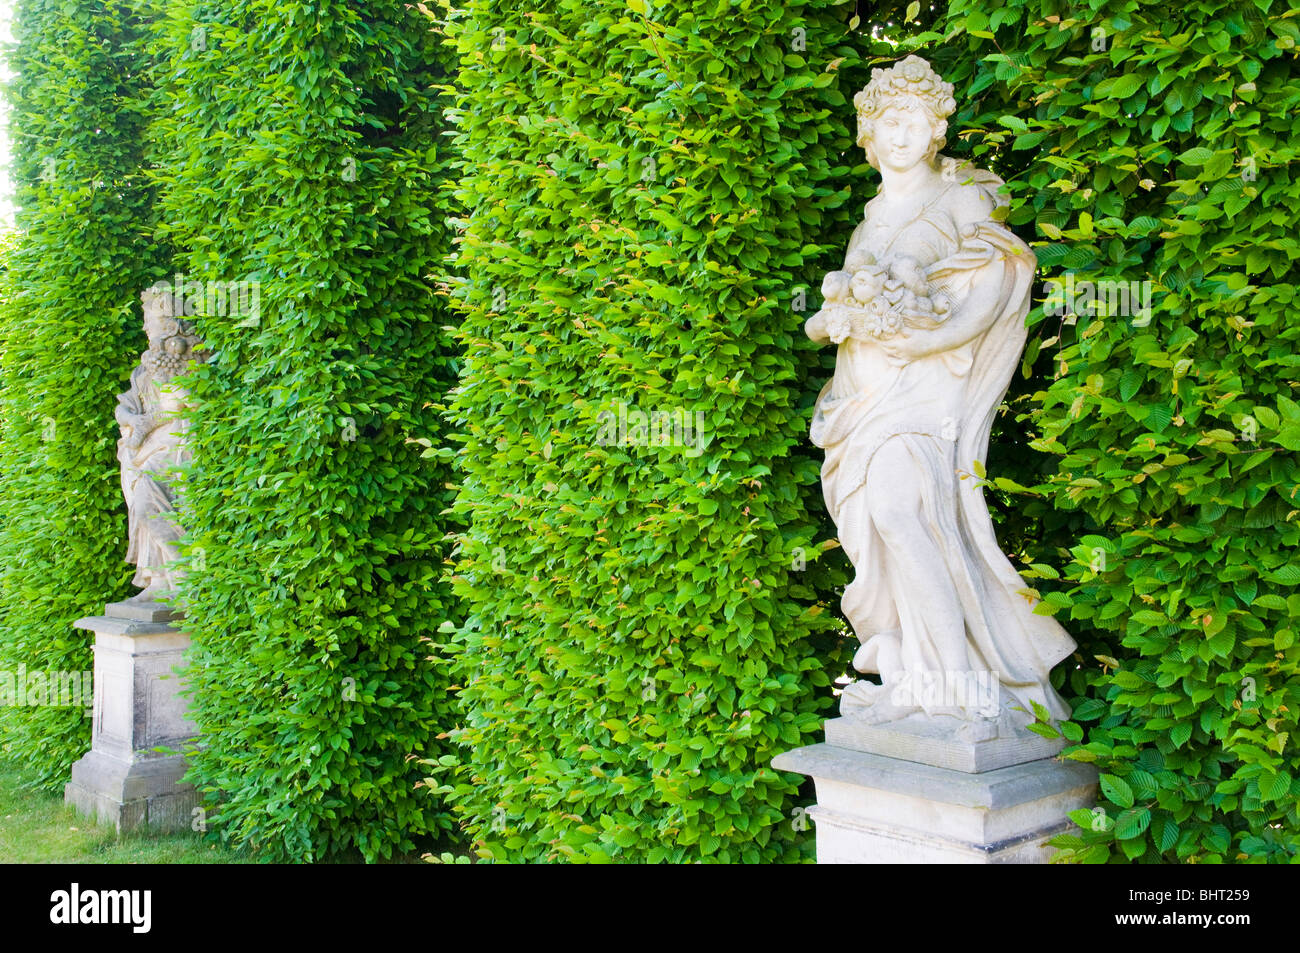 Giardino barocco Grosssedlitz, statue di fronte ad una siepe, Dresda, Germania Foto Stock